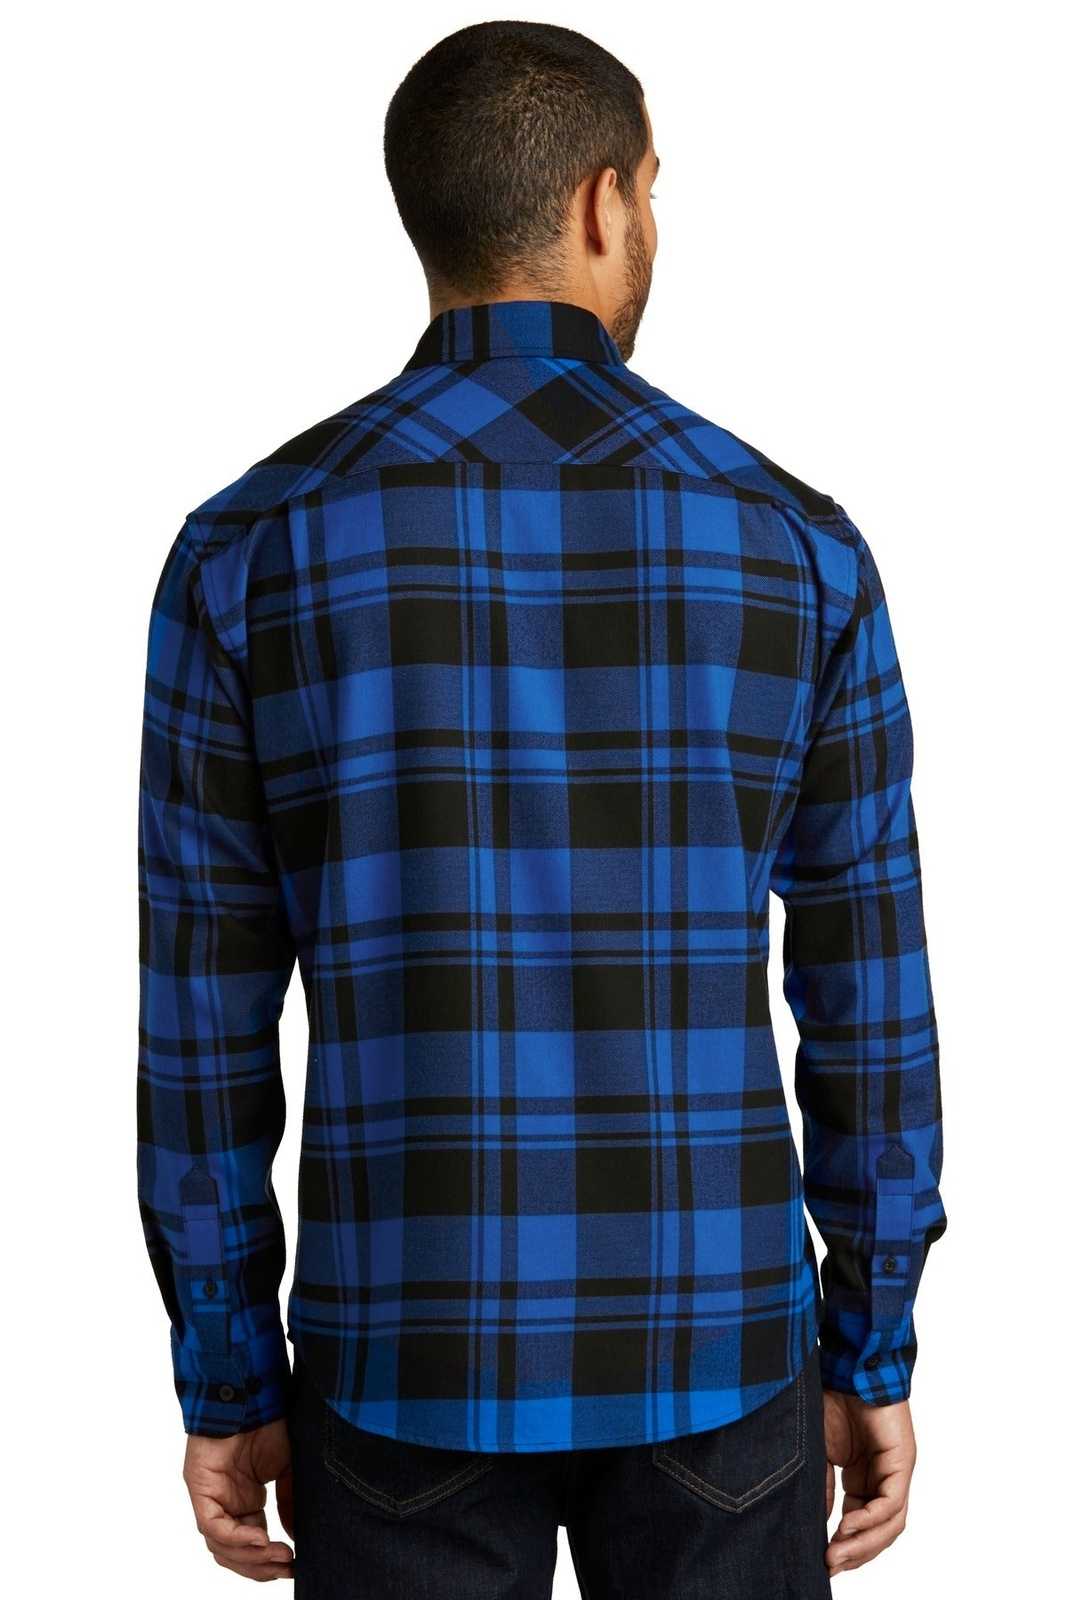 Port Authority W668 Plaid Flannel Shirt - Royal Black - HIT a Double - 1